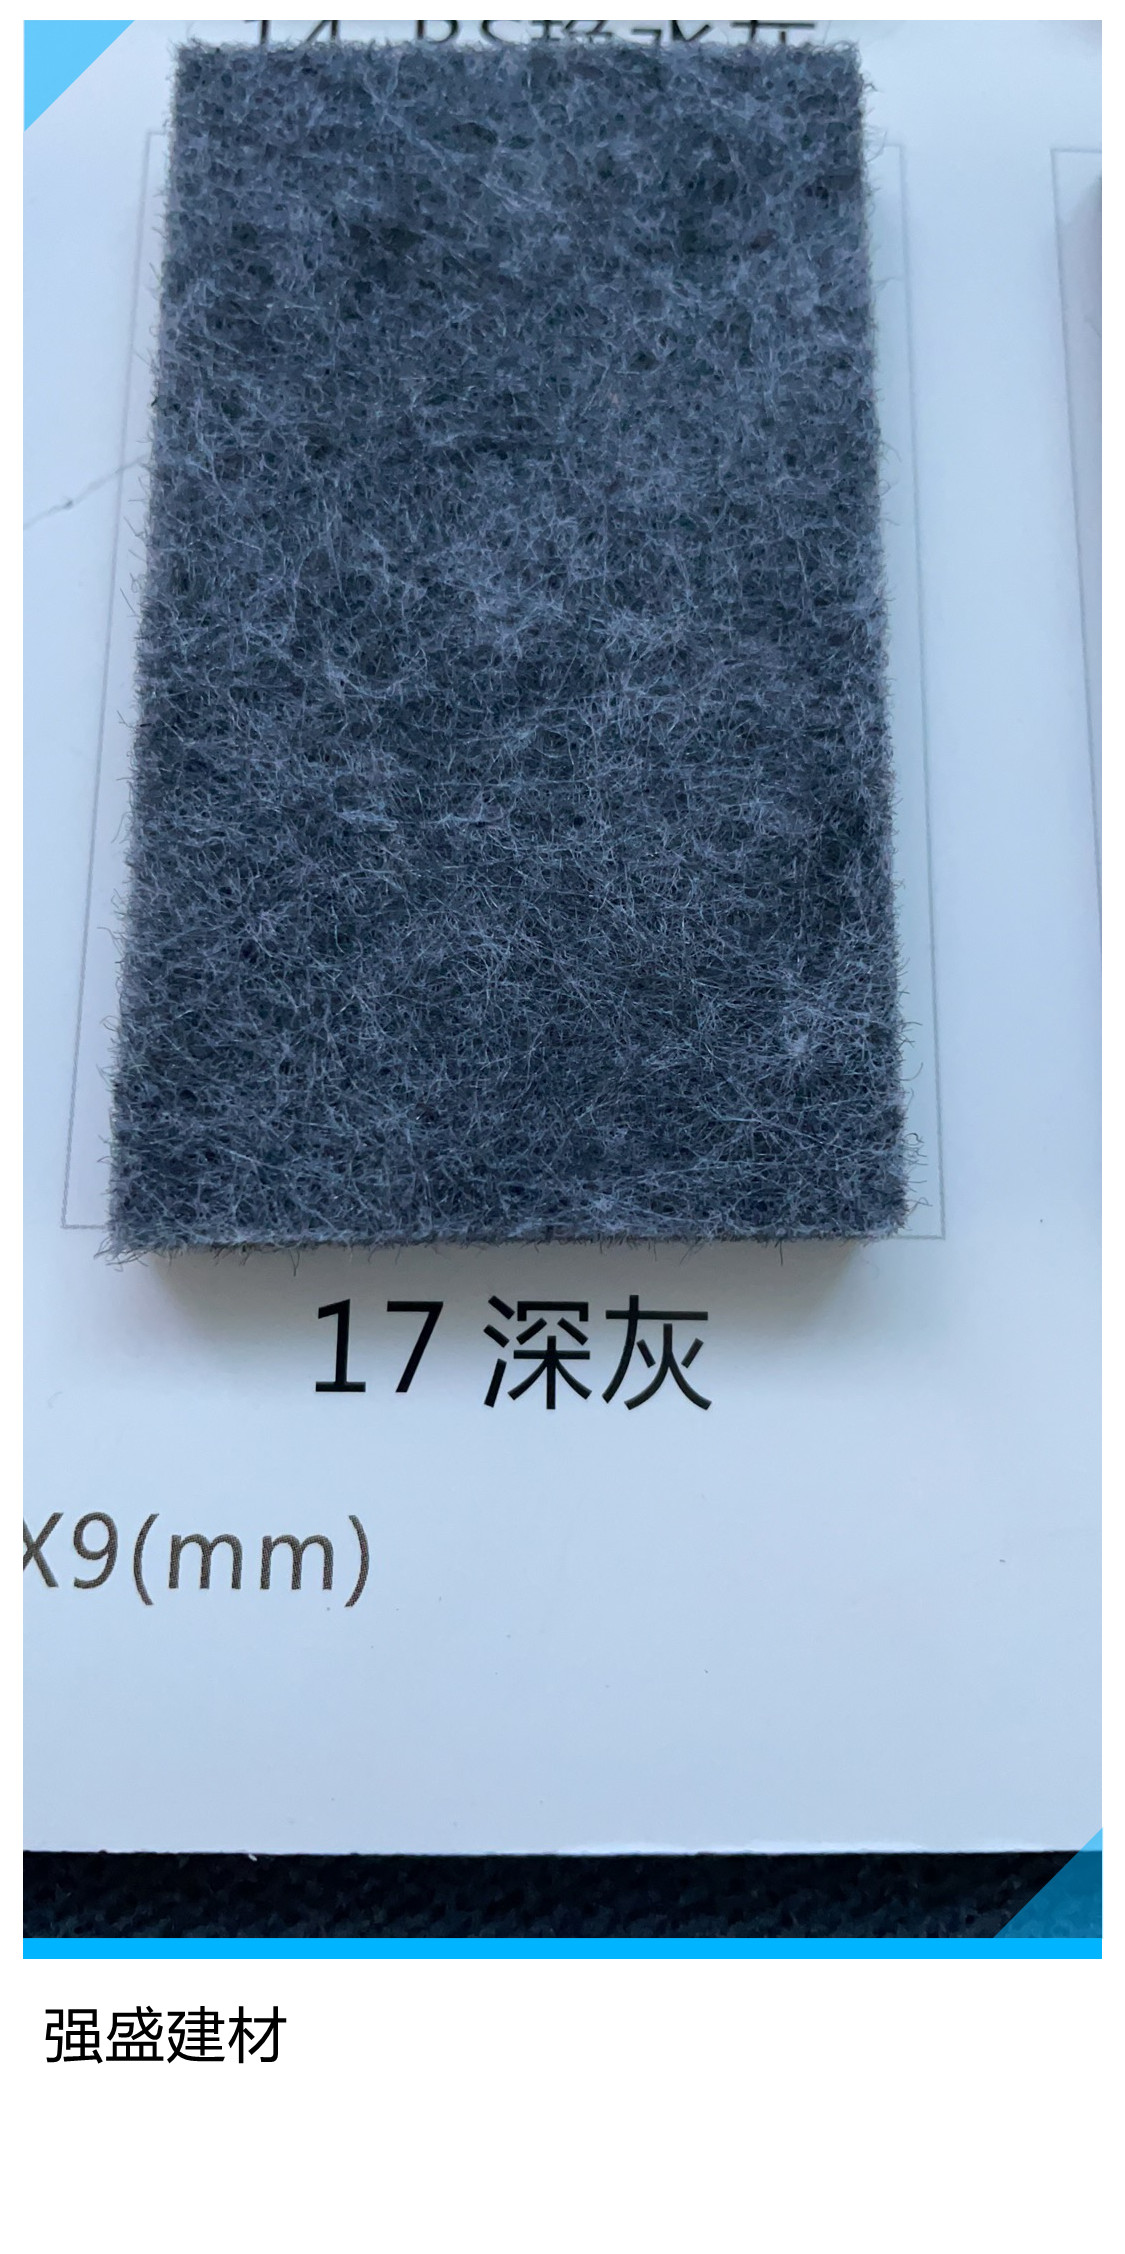 鄯善县12mm聚酯纤维吸音板价格 吸音板厂家 屋面吸音板强盛性能